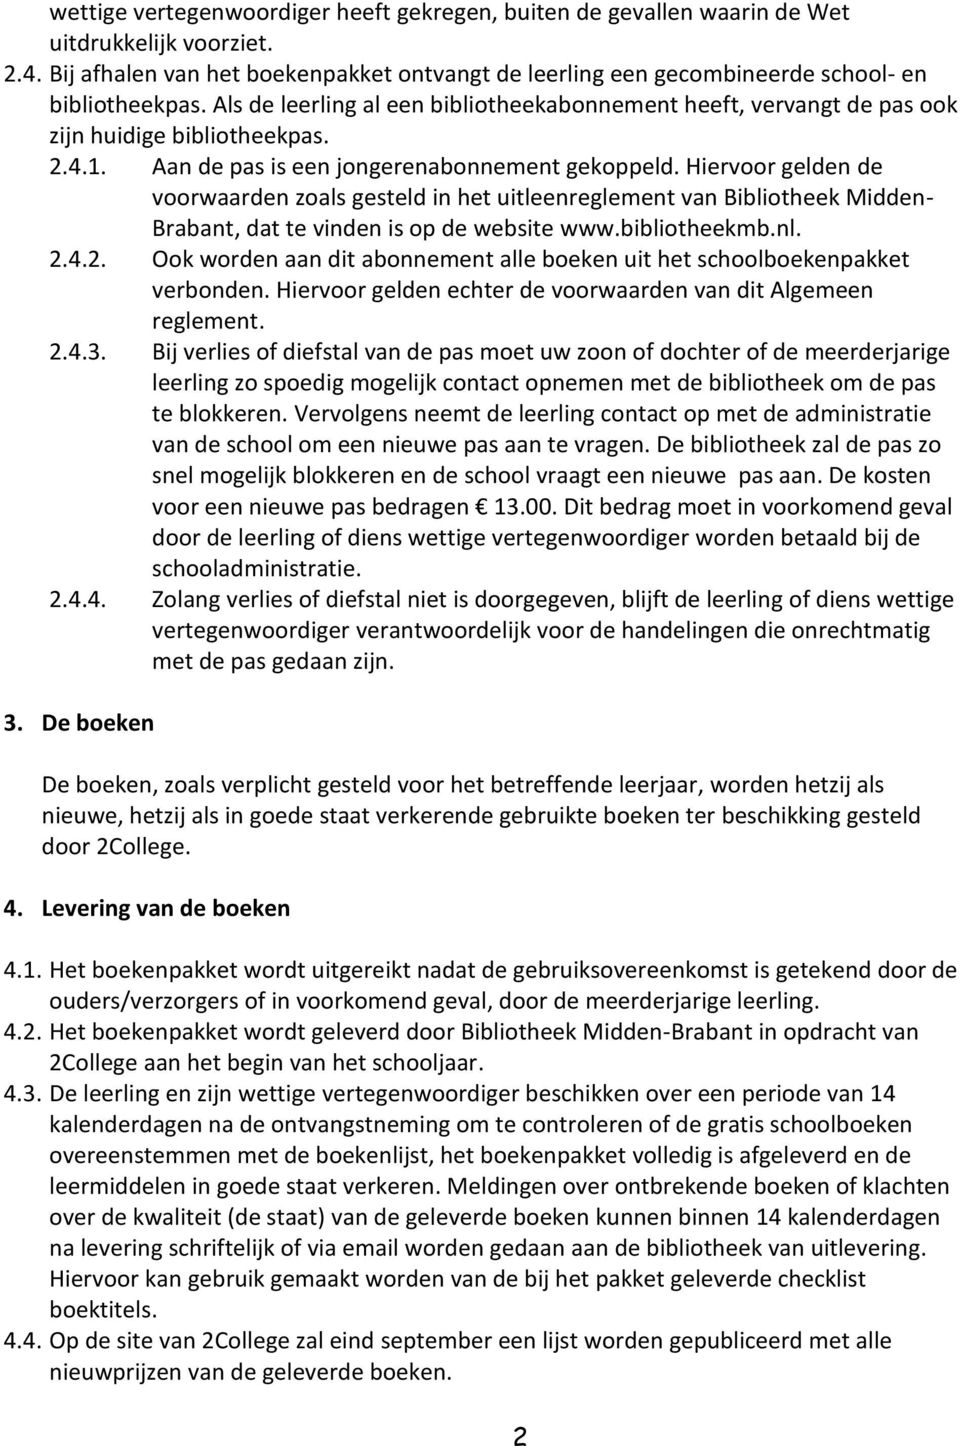 2.4.1. Aan de pas is een jongerenabonnement gekoppeld. Hiervoor gelden de voorwaarden zoals gesteld in het uitleenreglement van Bibliotheek Midden- Brabant, dat te vinden is op de website www.